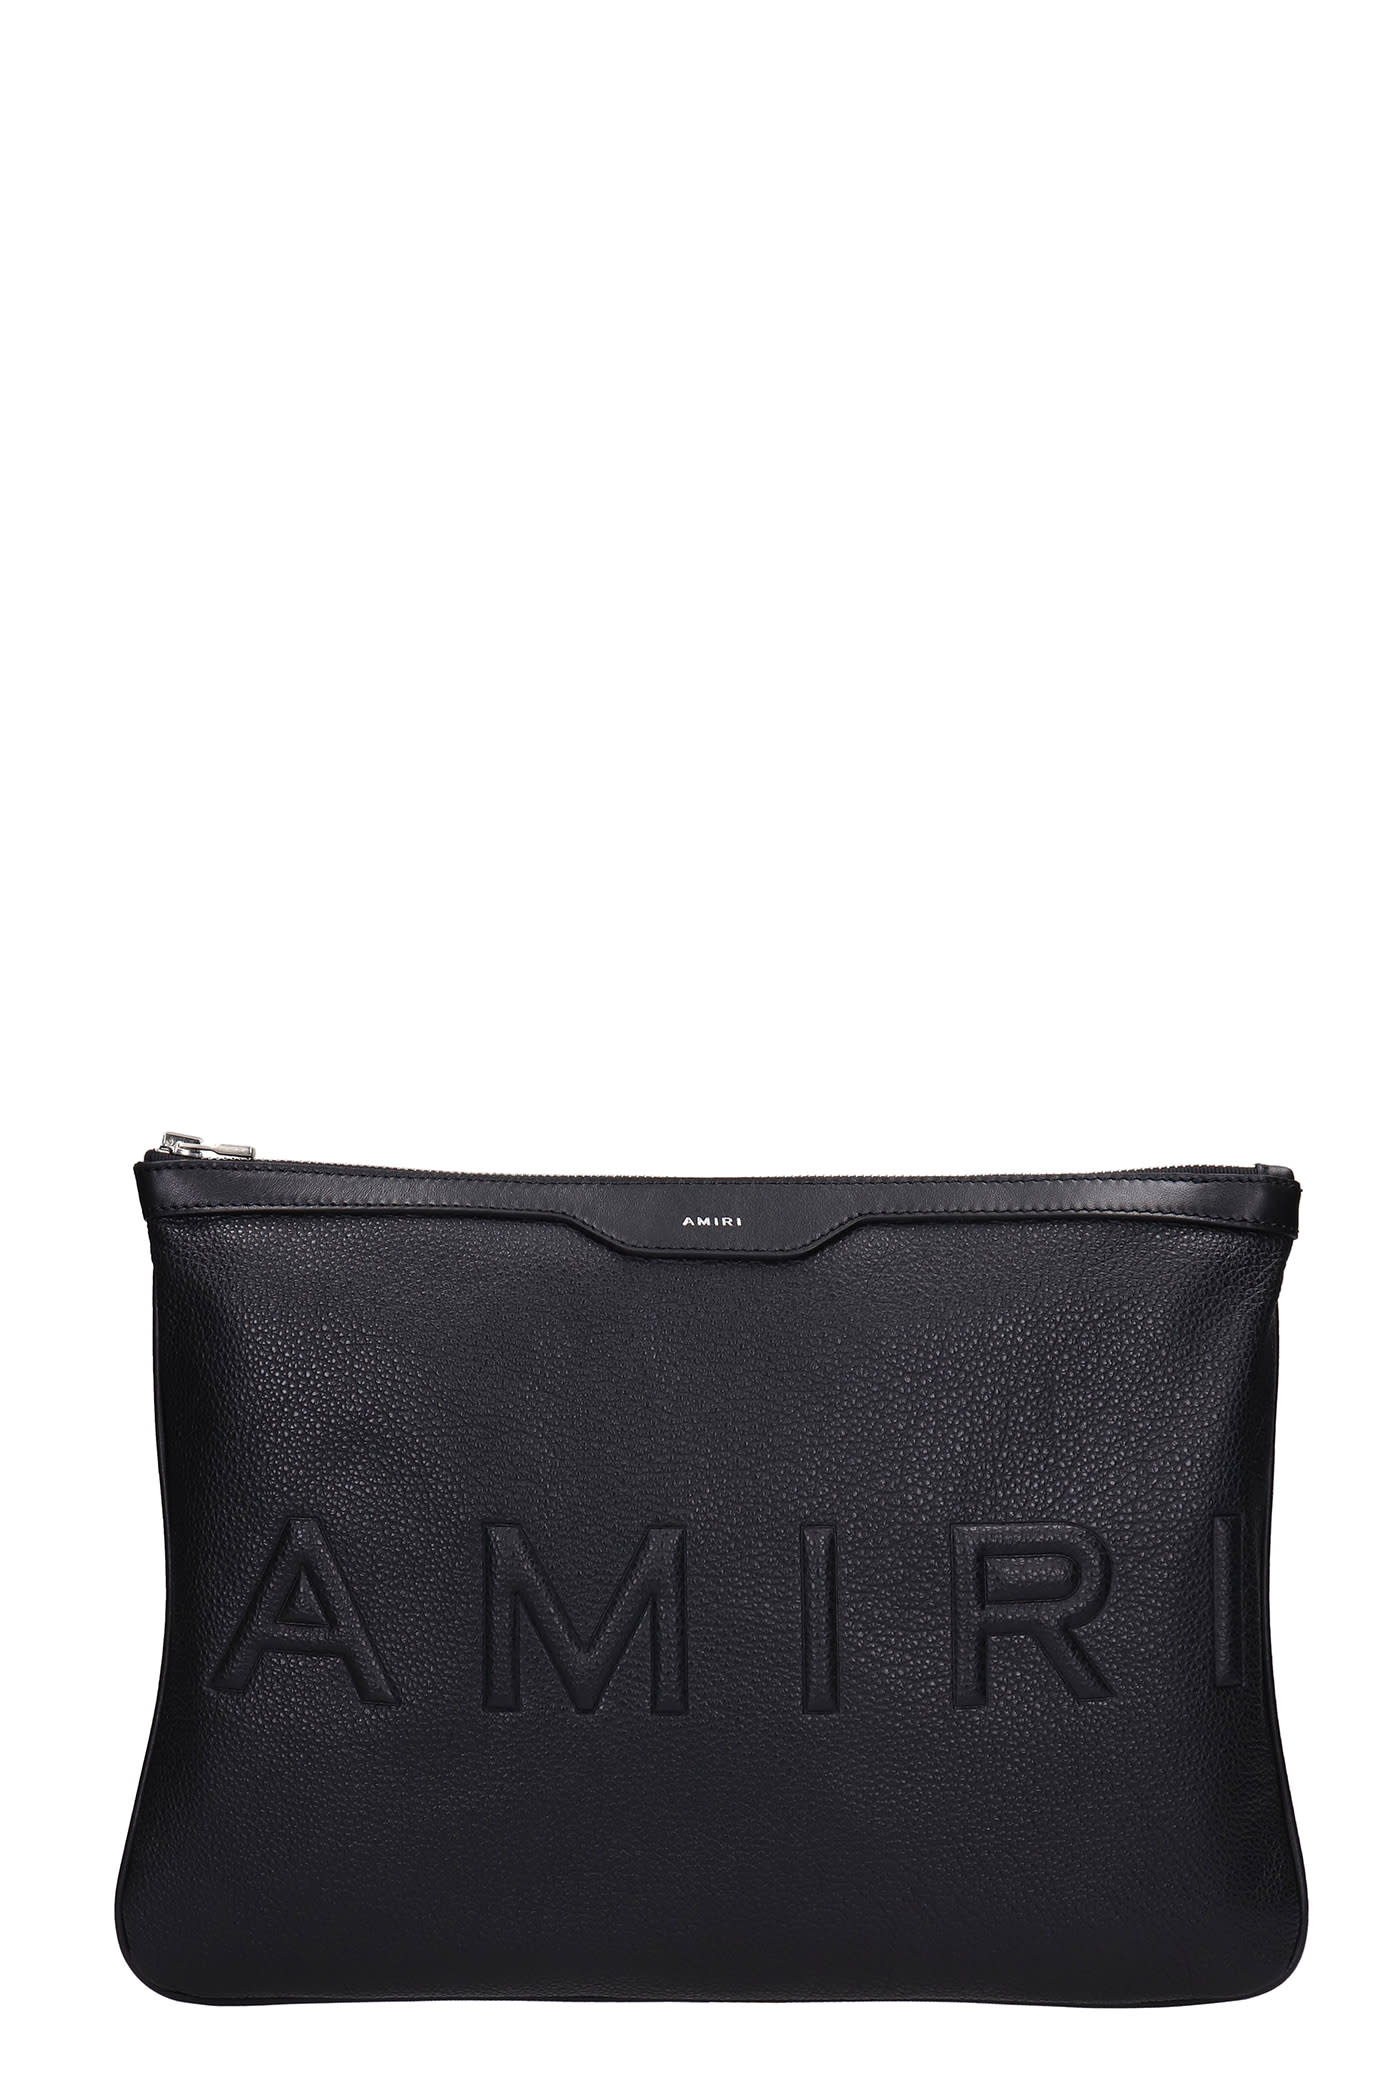 AMIRI Clutch In Black Leather